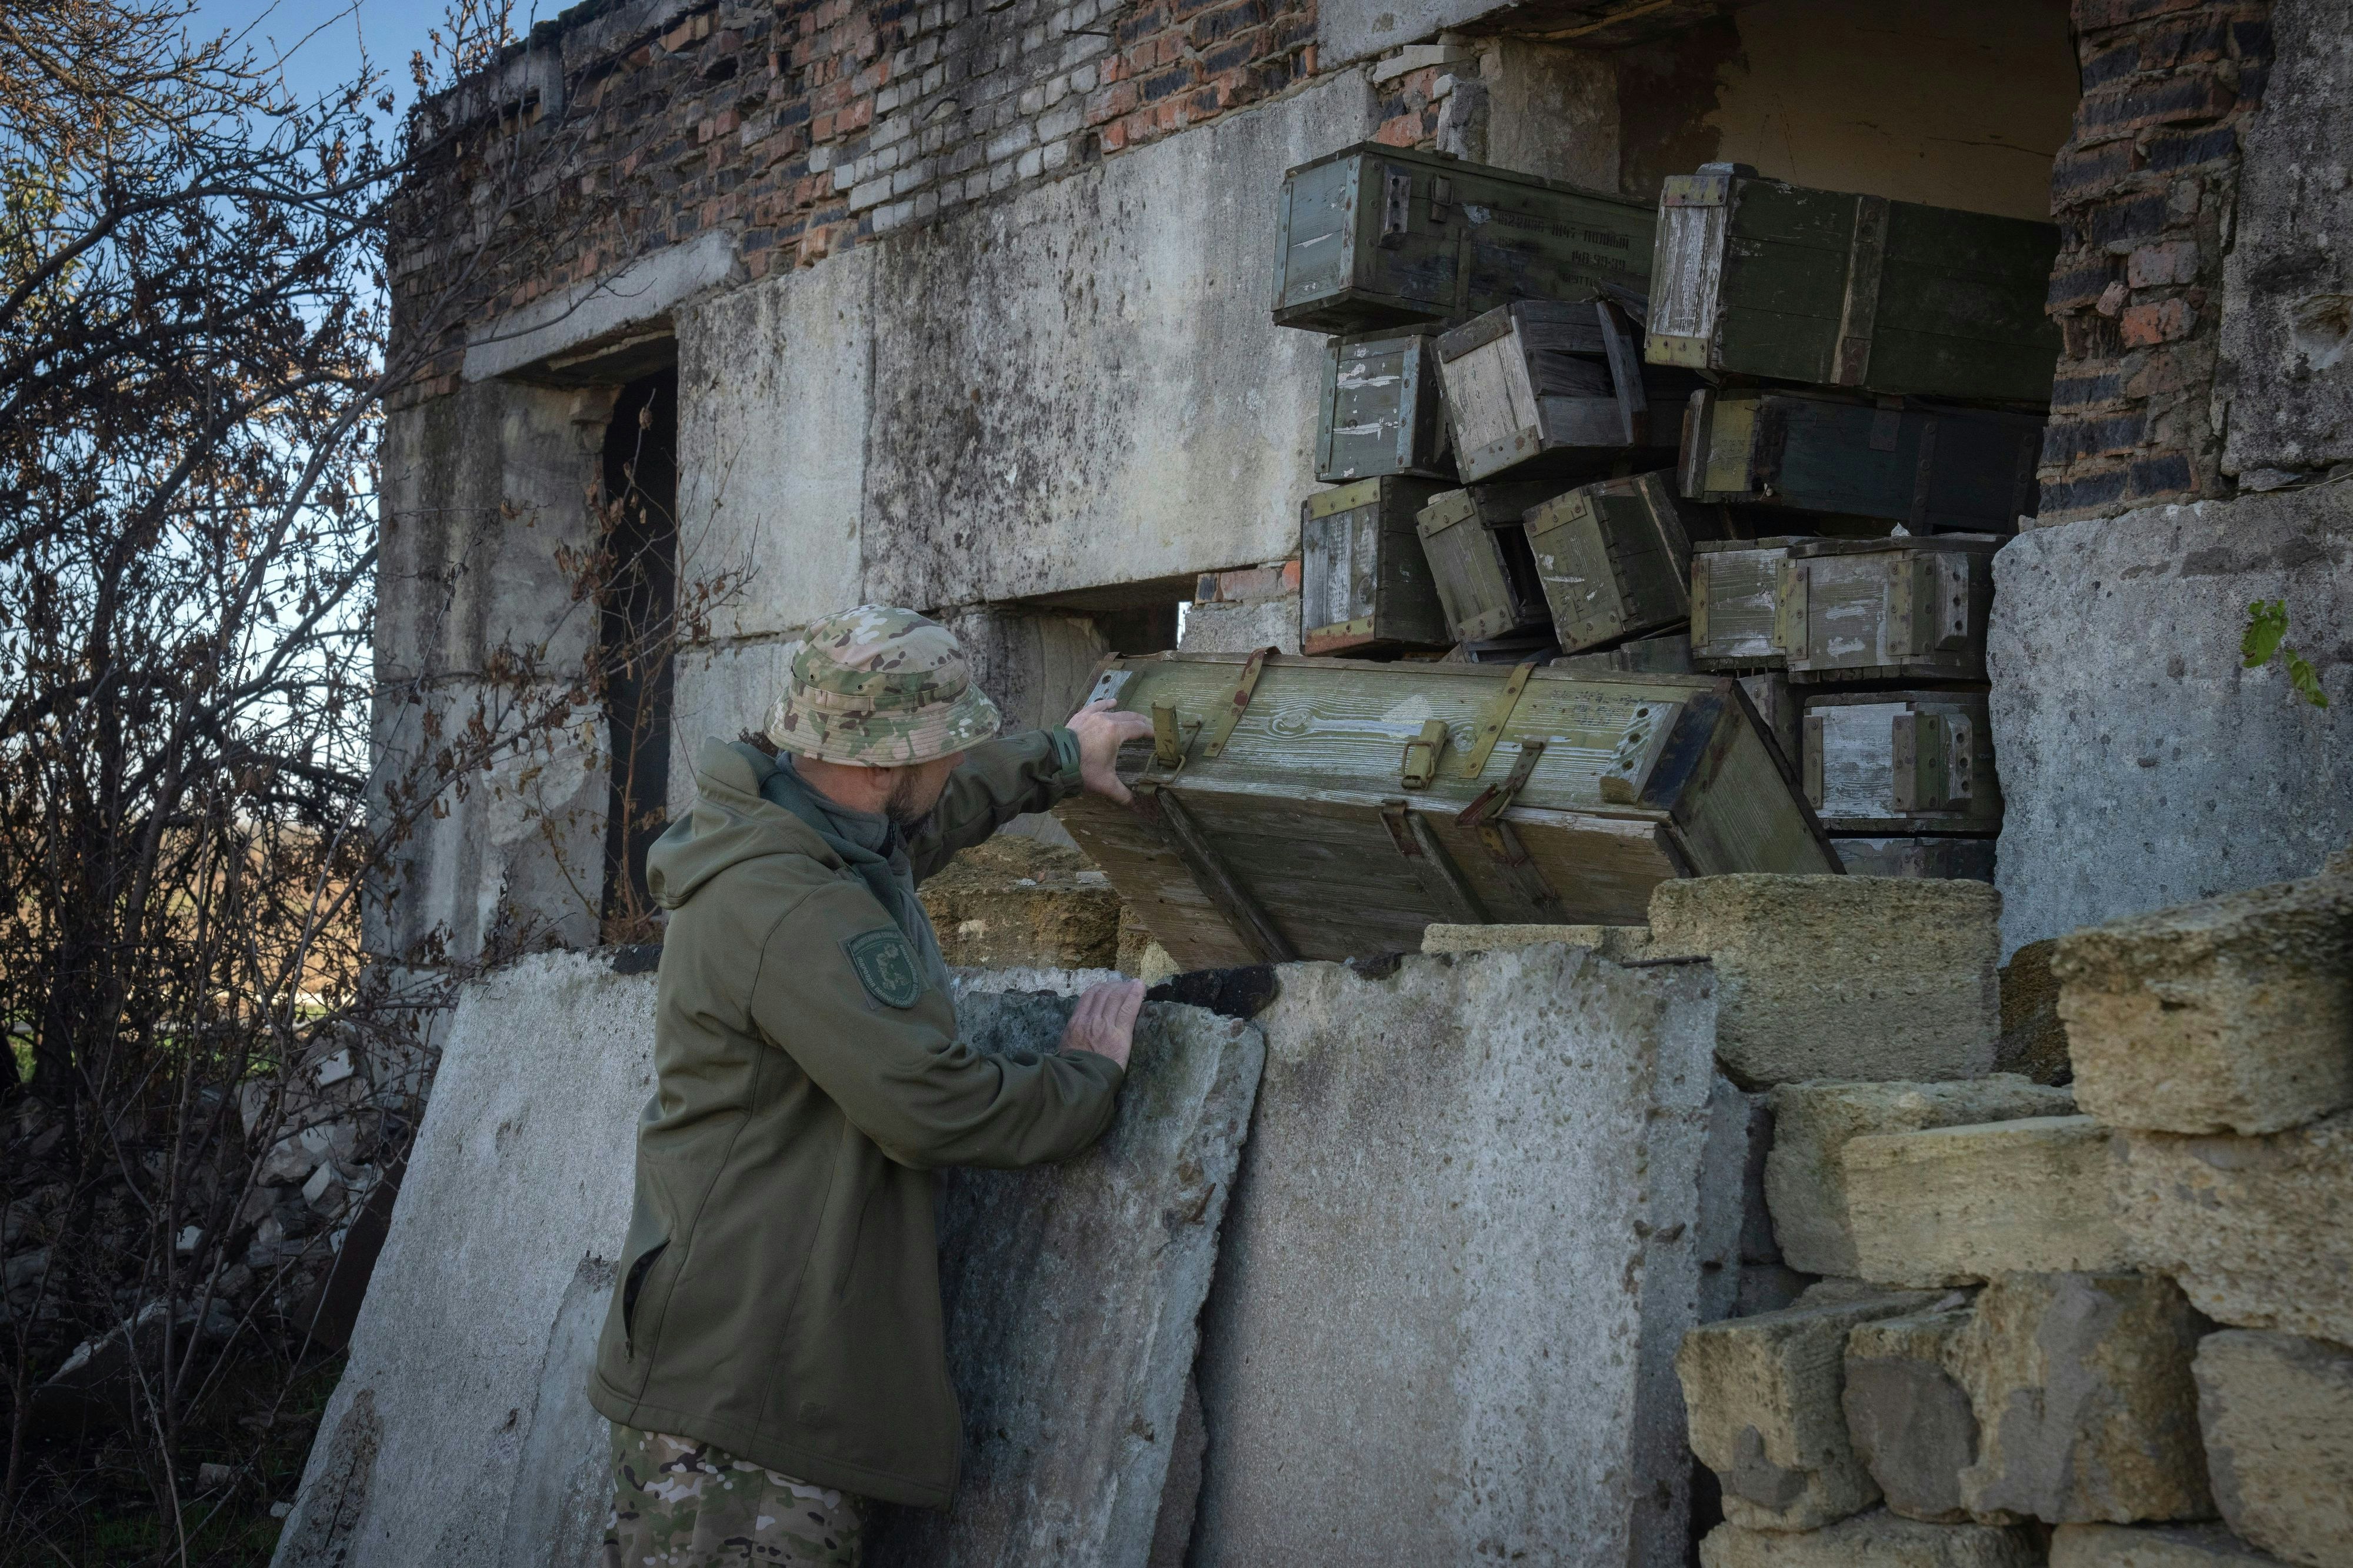 ukraine-newsblog: britische militärexperten schätzen russische verluste so hoch ein wie kaum zuvor